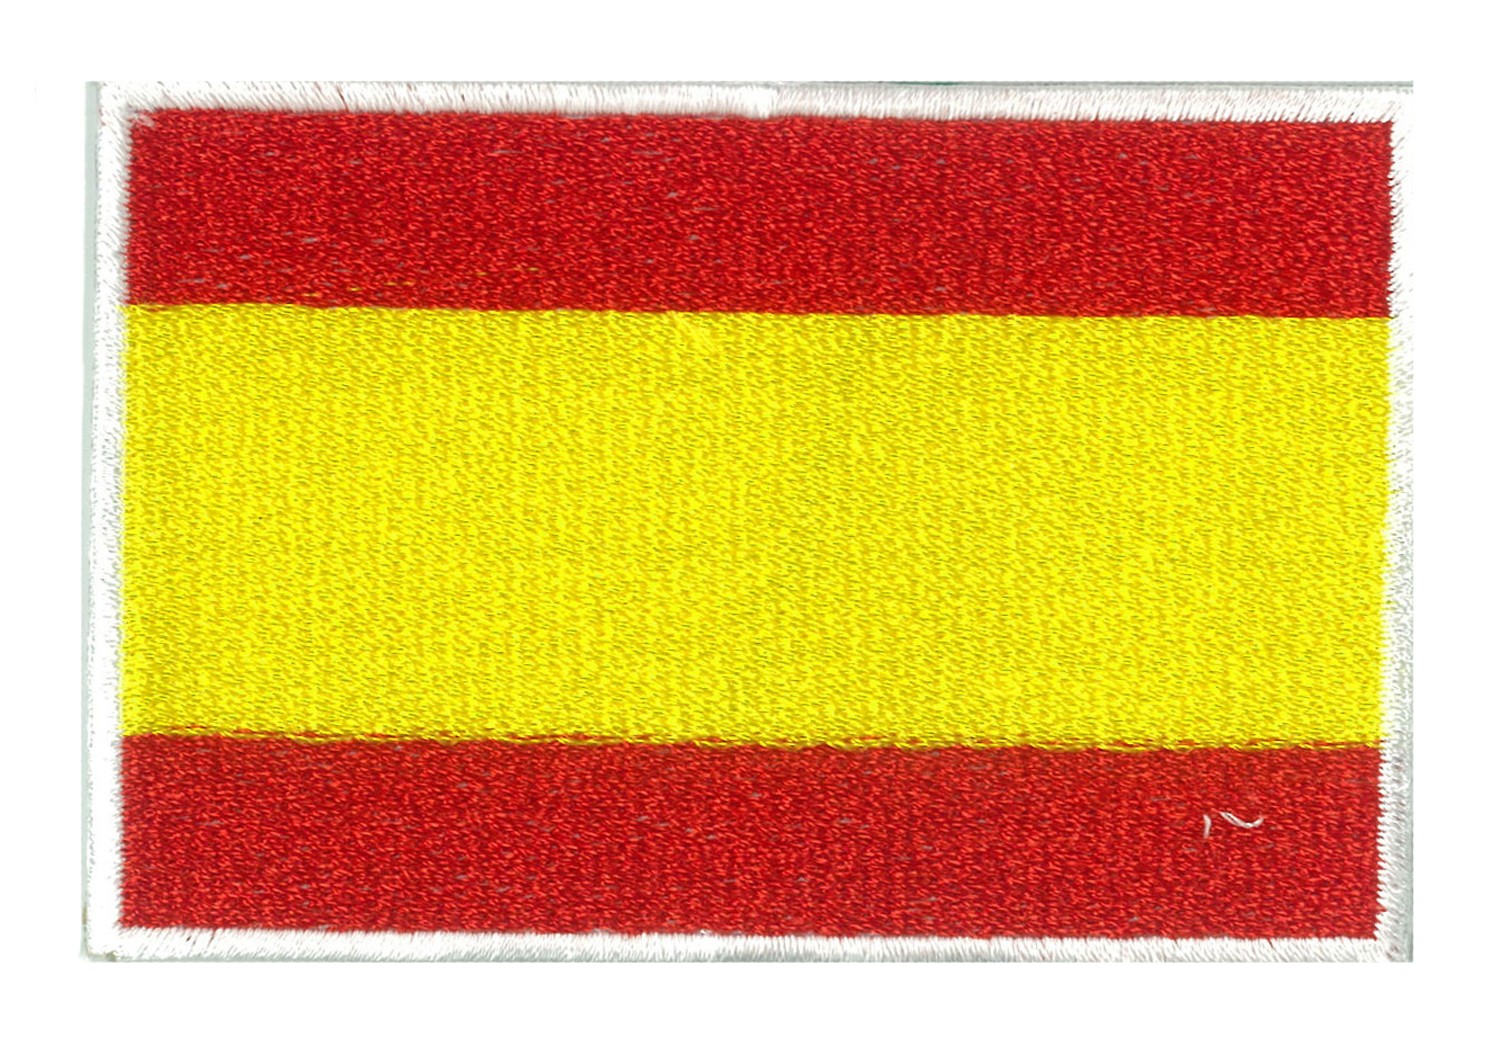 Parche bandera España